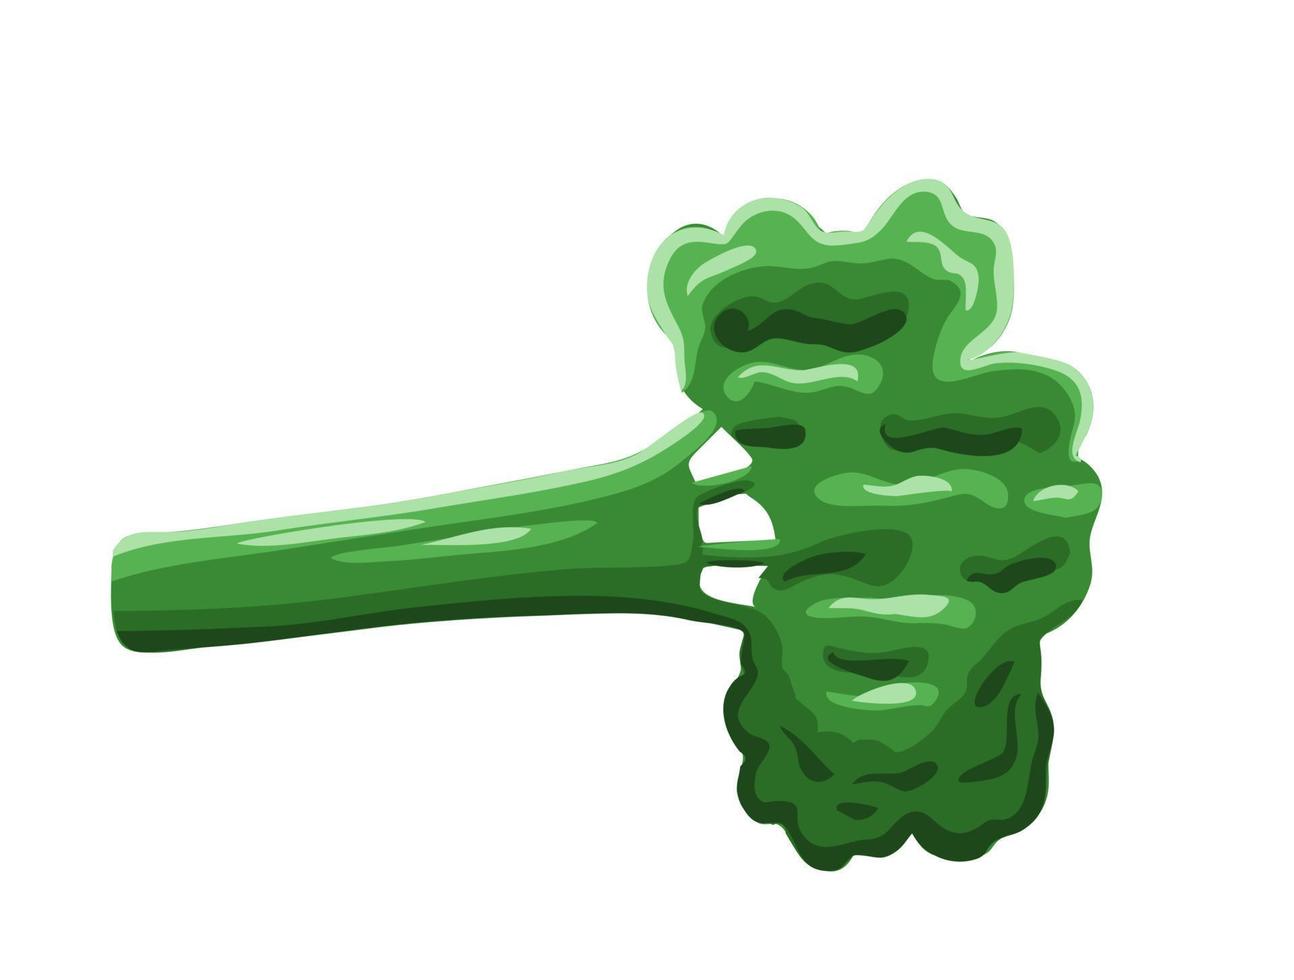 Broccoli cabbage in cartoon style vector